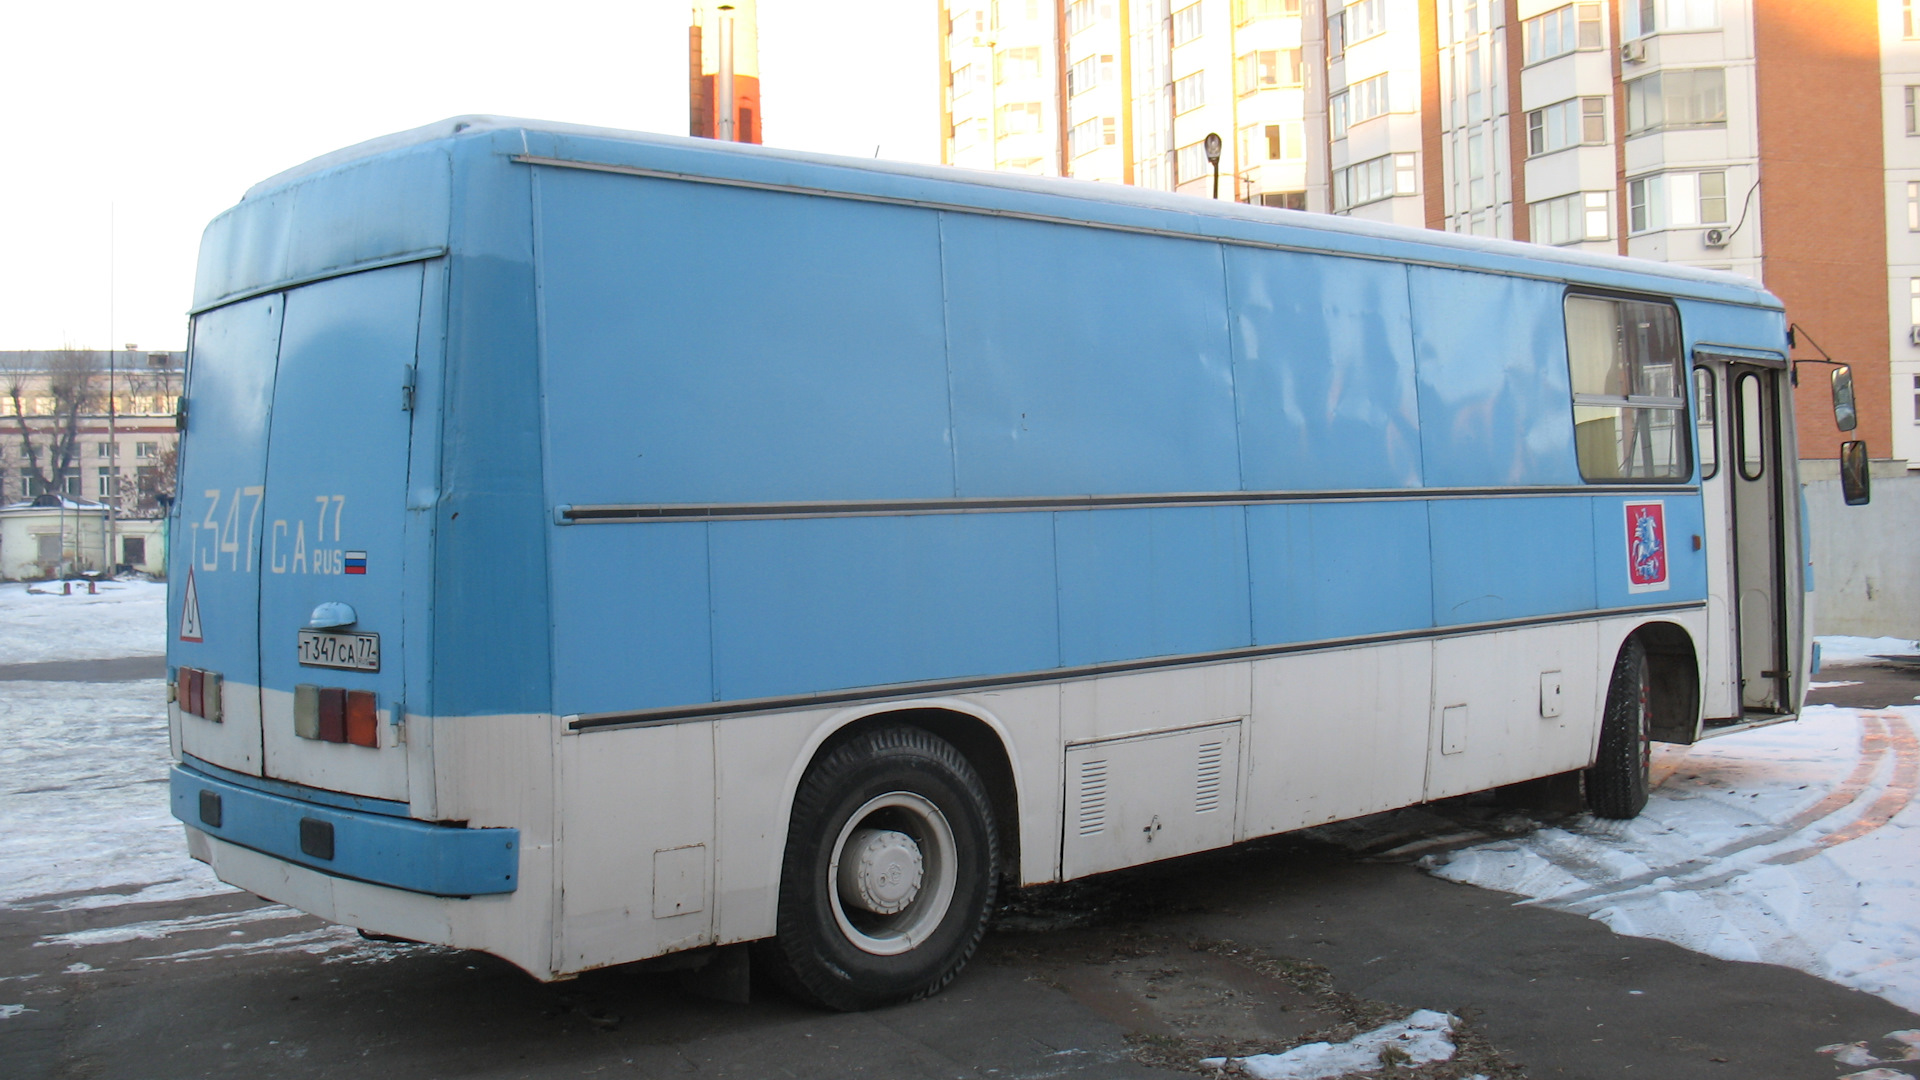 Авито автобусы бу паз. Автодом автобус Икарус. Автобус ЛАЗ-автодом. ПАЗ 37981 груз фургон. Икарус 256 автодом.